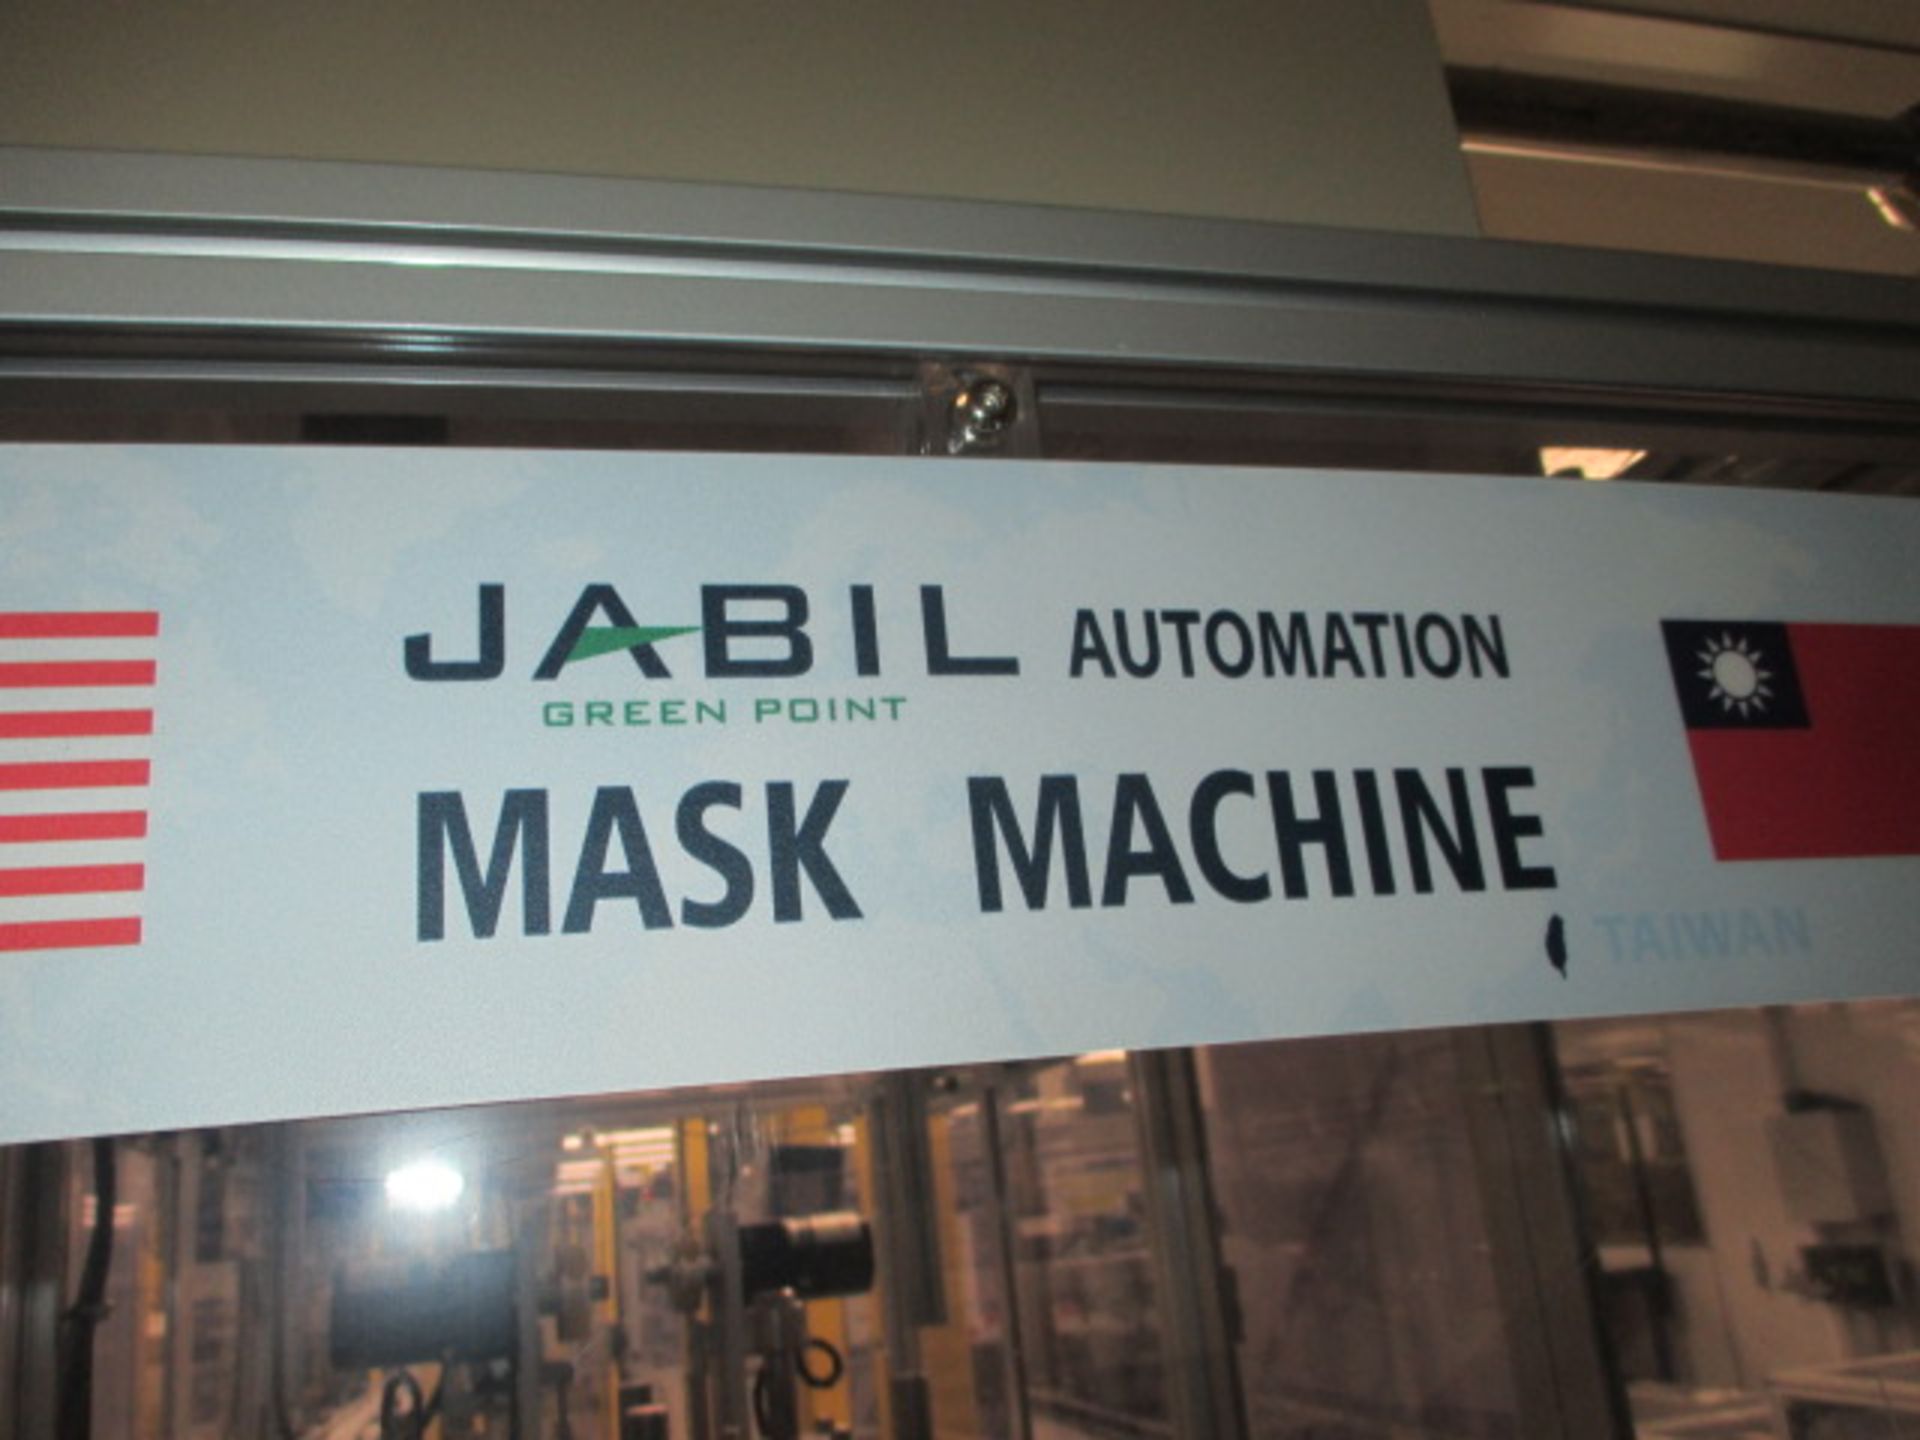 Jabil Mask Machine - Image 16 of 16